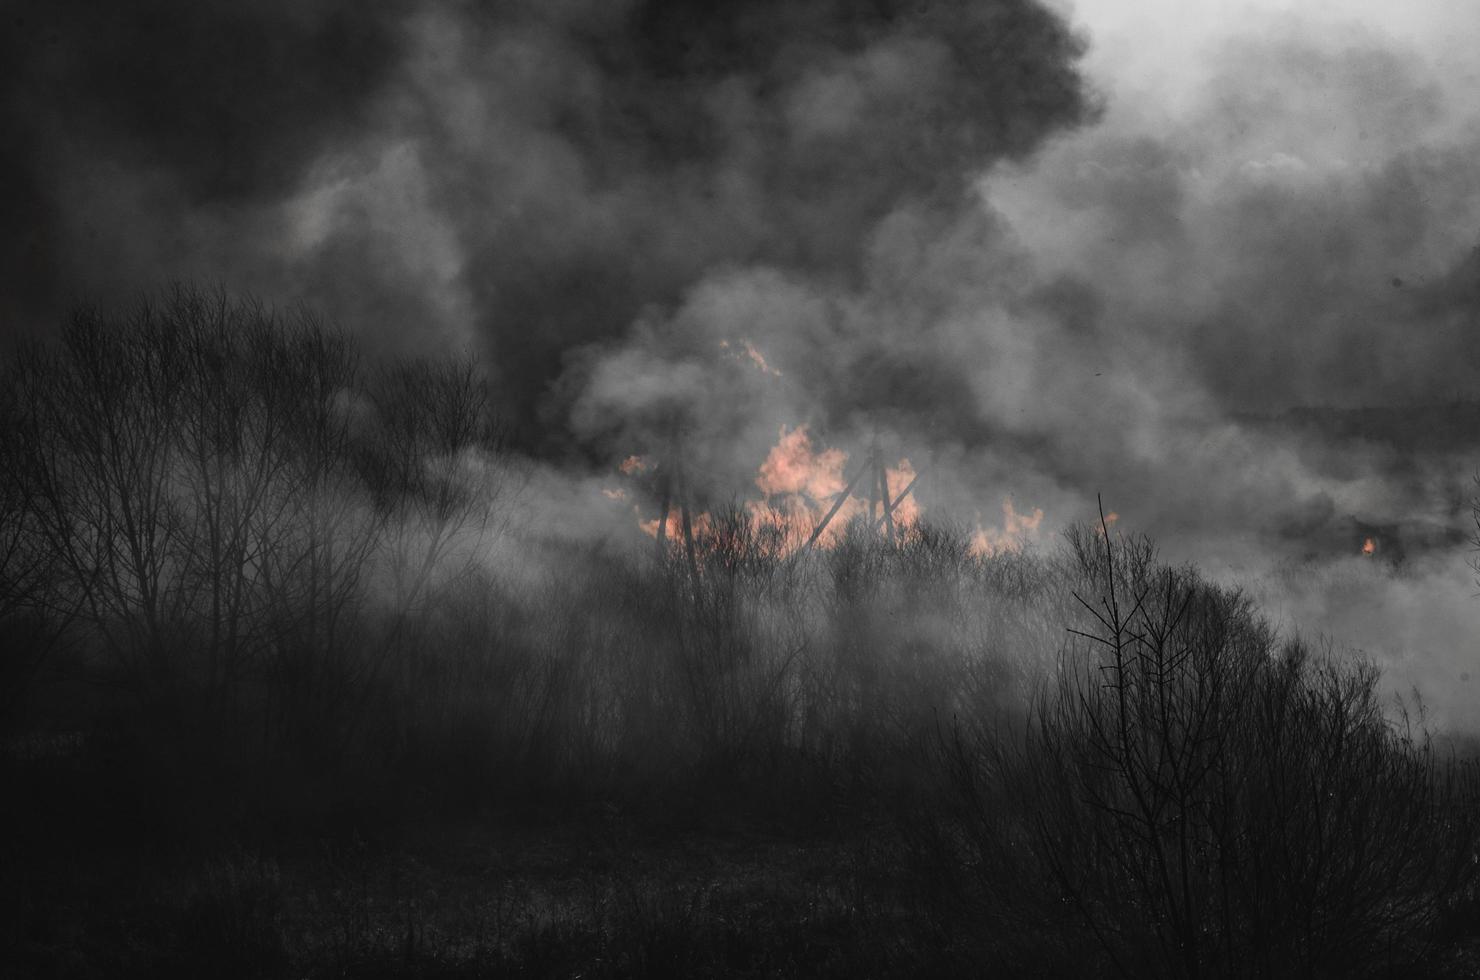 starkes Feuer und Rauch, Gras und Schilf in Flammen. schwarzer Rauch. foto